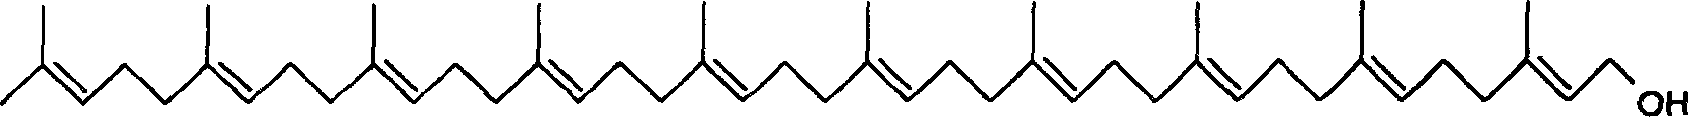 Method for synthesizing deca-isoprene alcohol